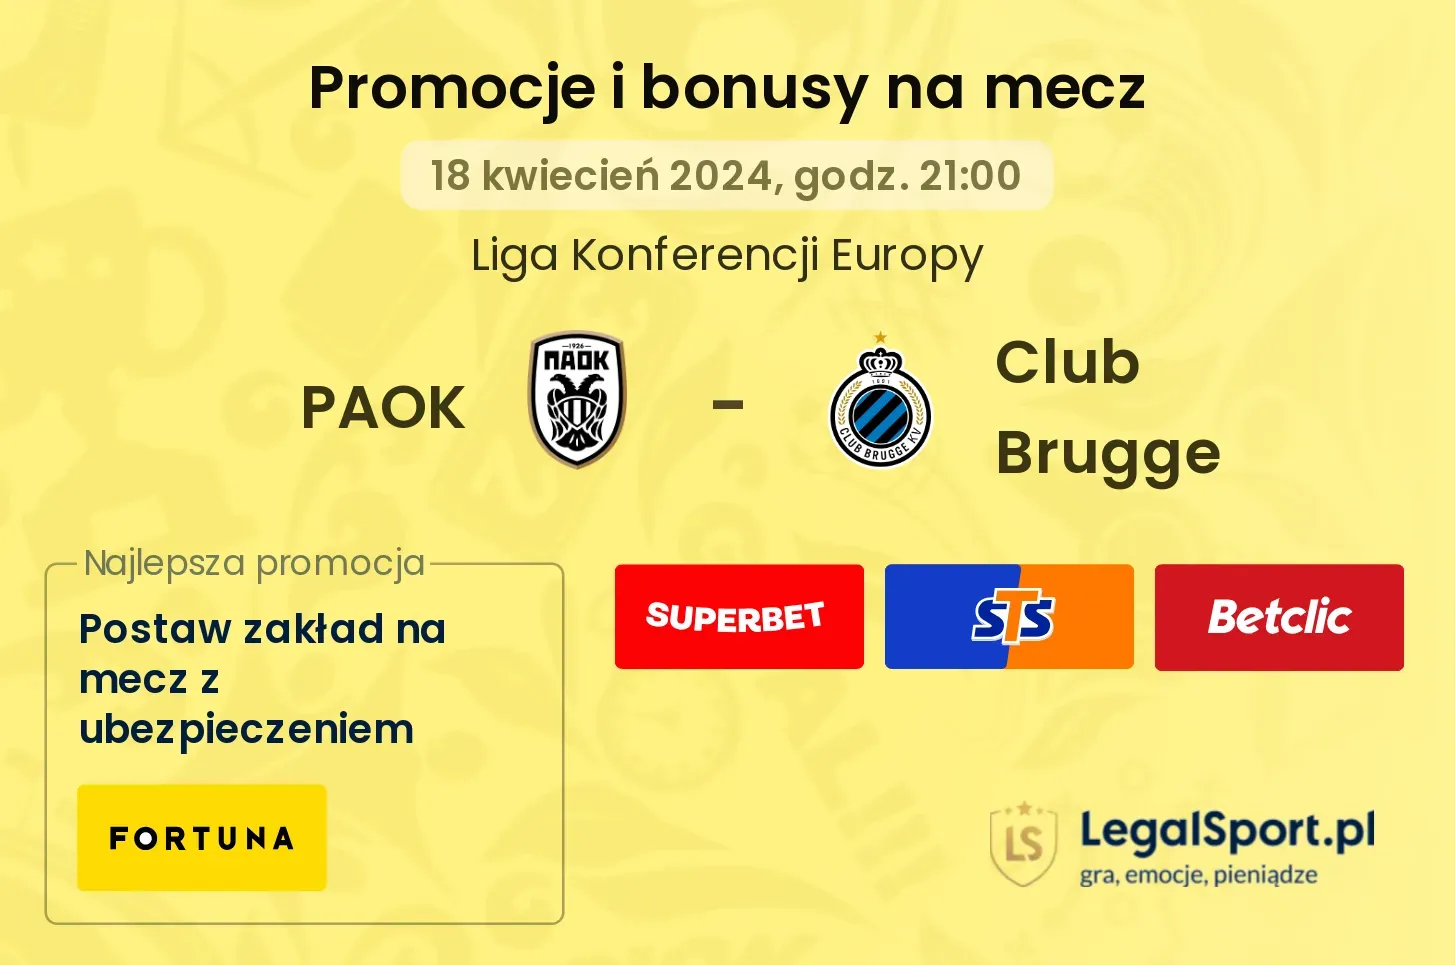 PAOK - Club Brugge promocje bonusy na mecz